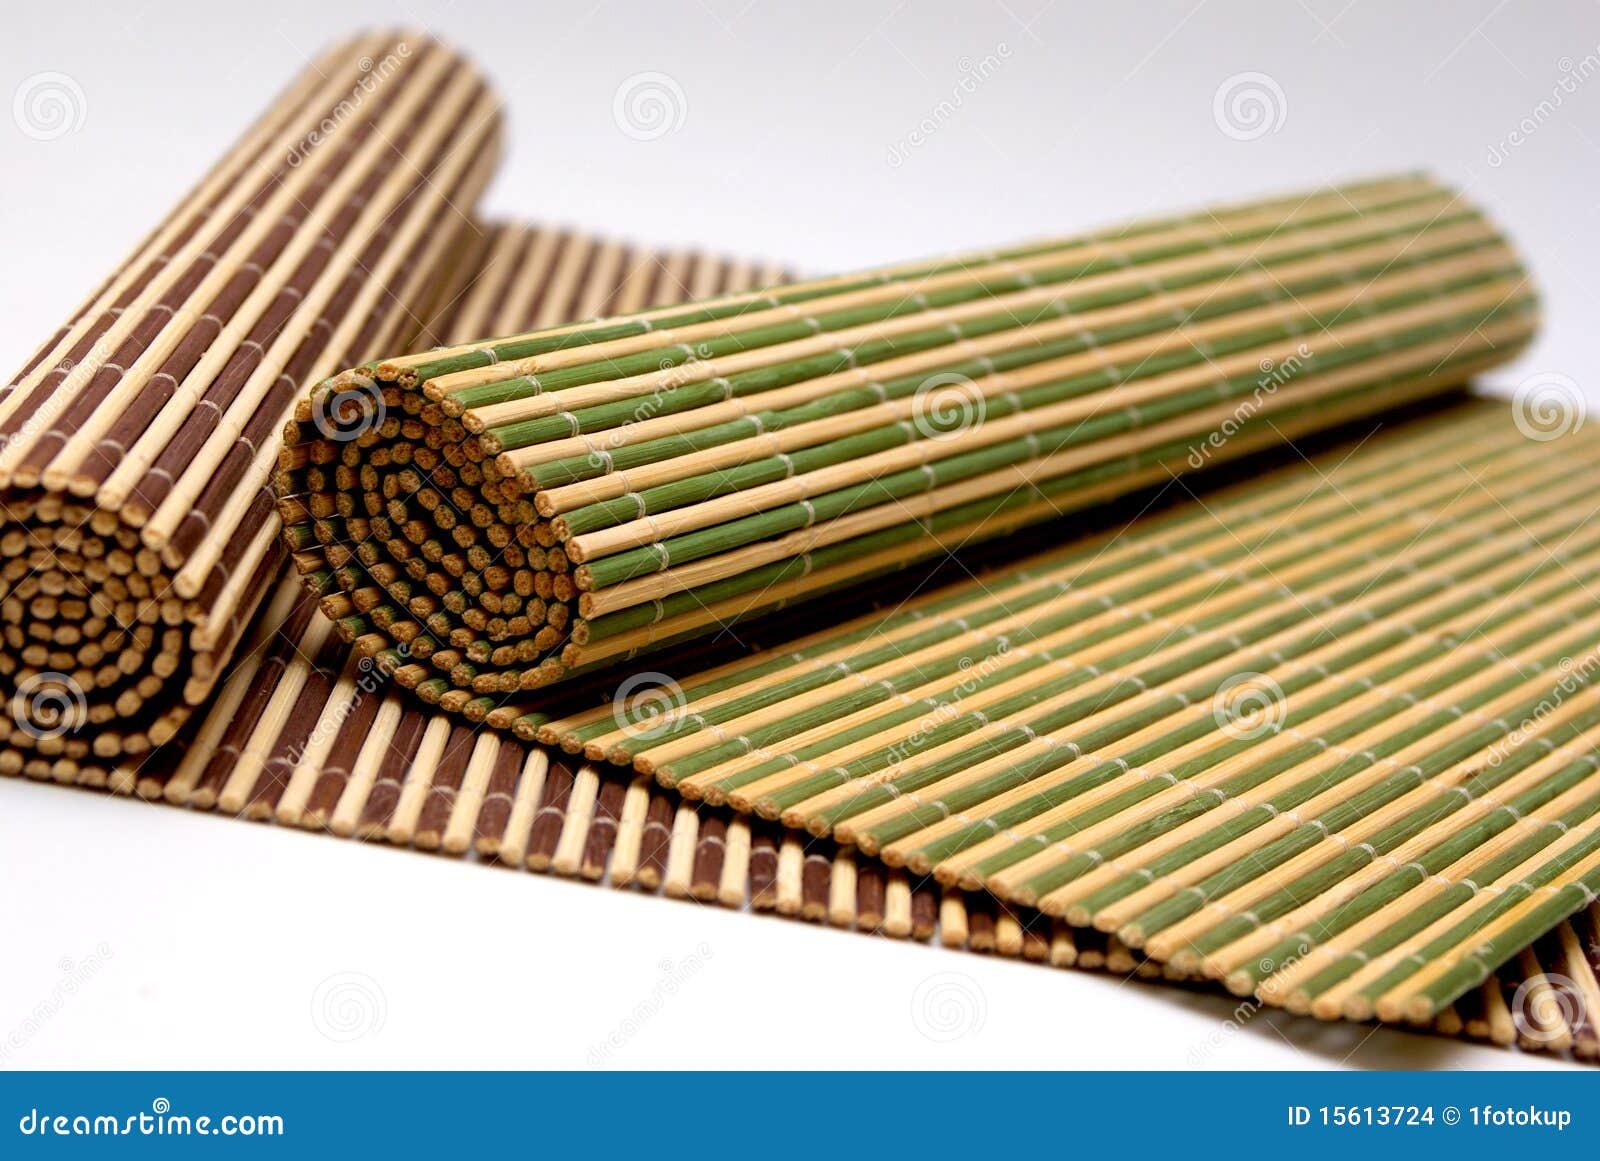 Armoedig veiligheid niet verwant Bamboo Wooden Placemats stock photo. Image of domestic - 15613724